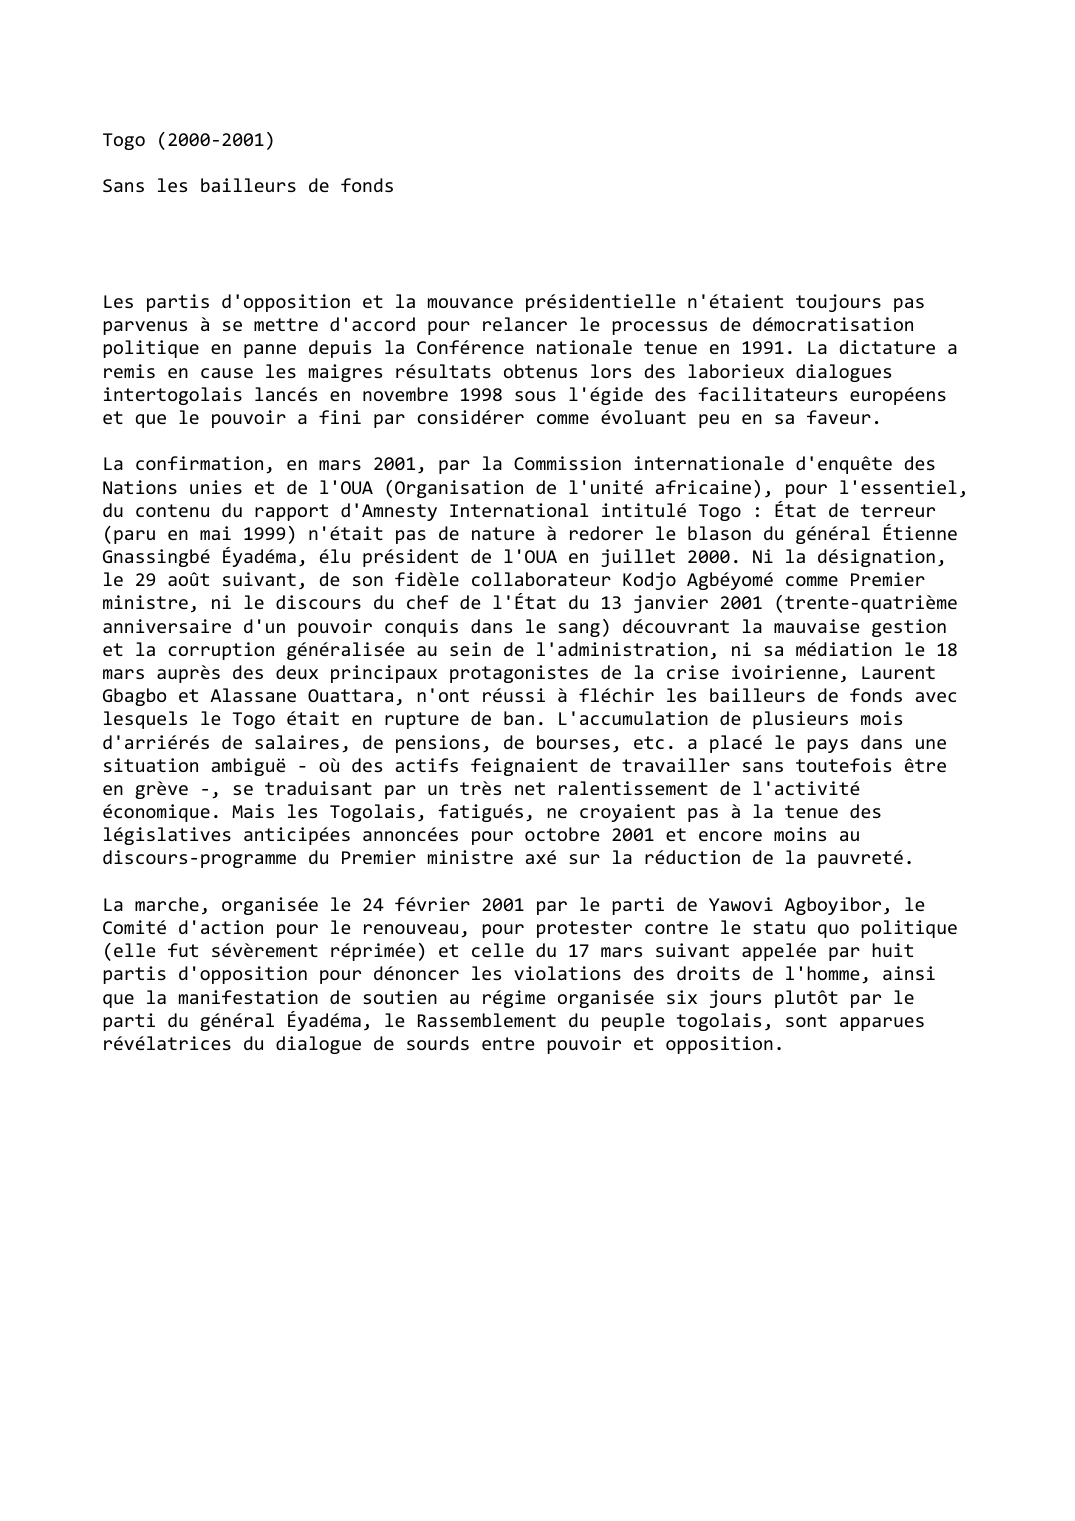 Prévisualisation du document Togo (2000-2001)

Sans les bailleurs de fonds